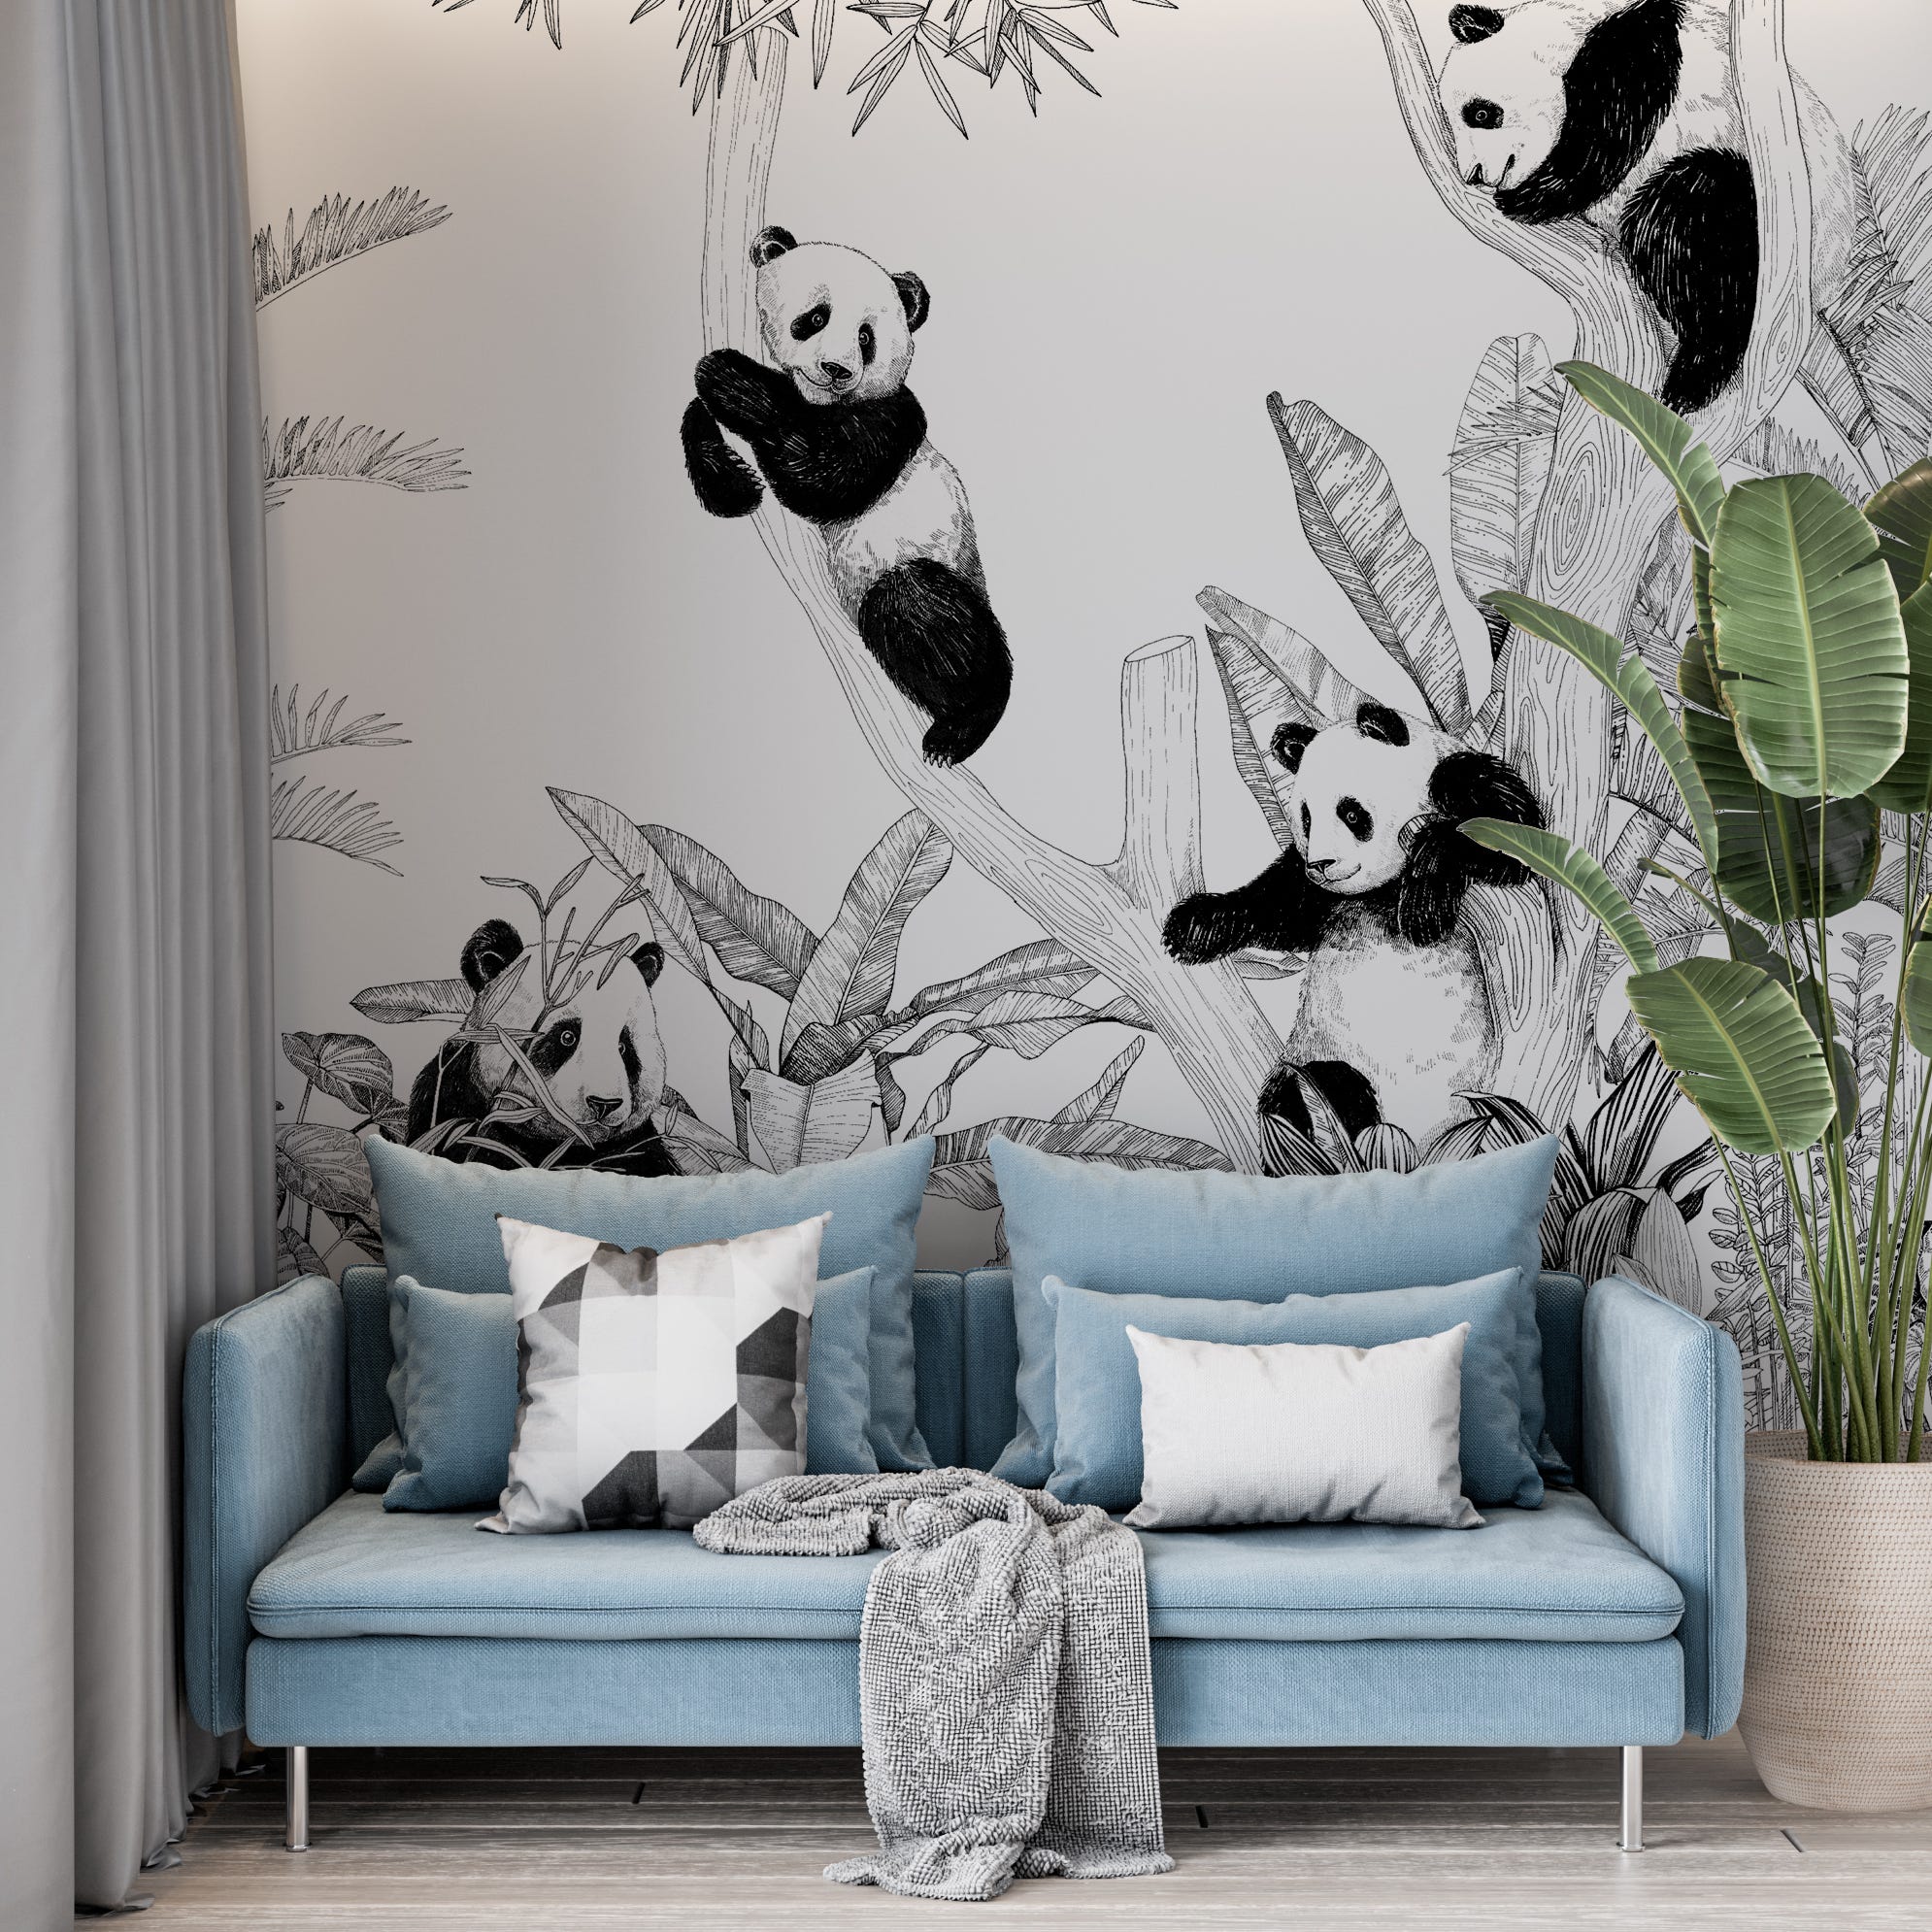 Papier peint chambre enfant  Pandas trop mignons – LePapierPeint